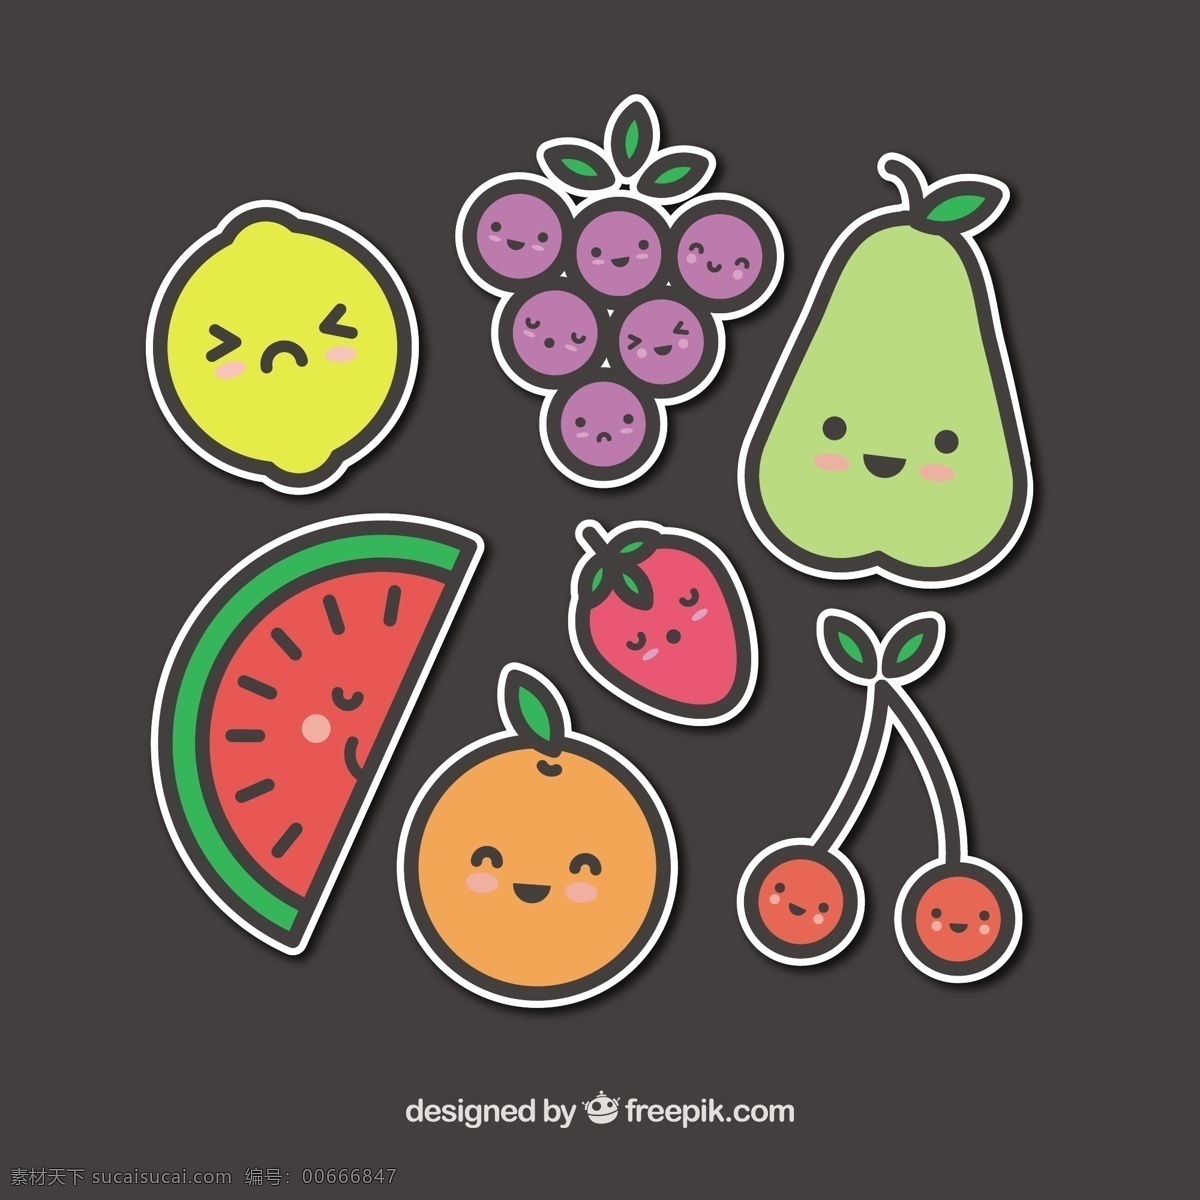 手绘 风格 各种 水果 矢量 图标 手绘风格 各种水果 矢量图标